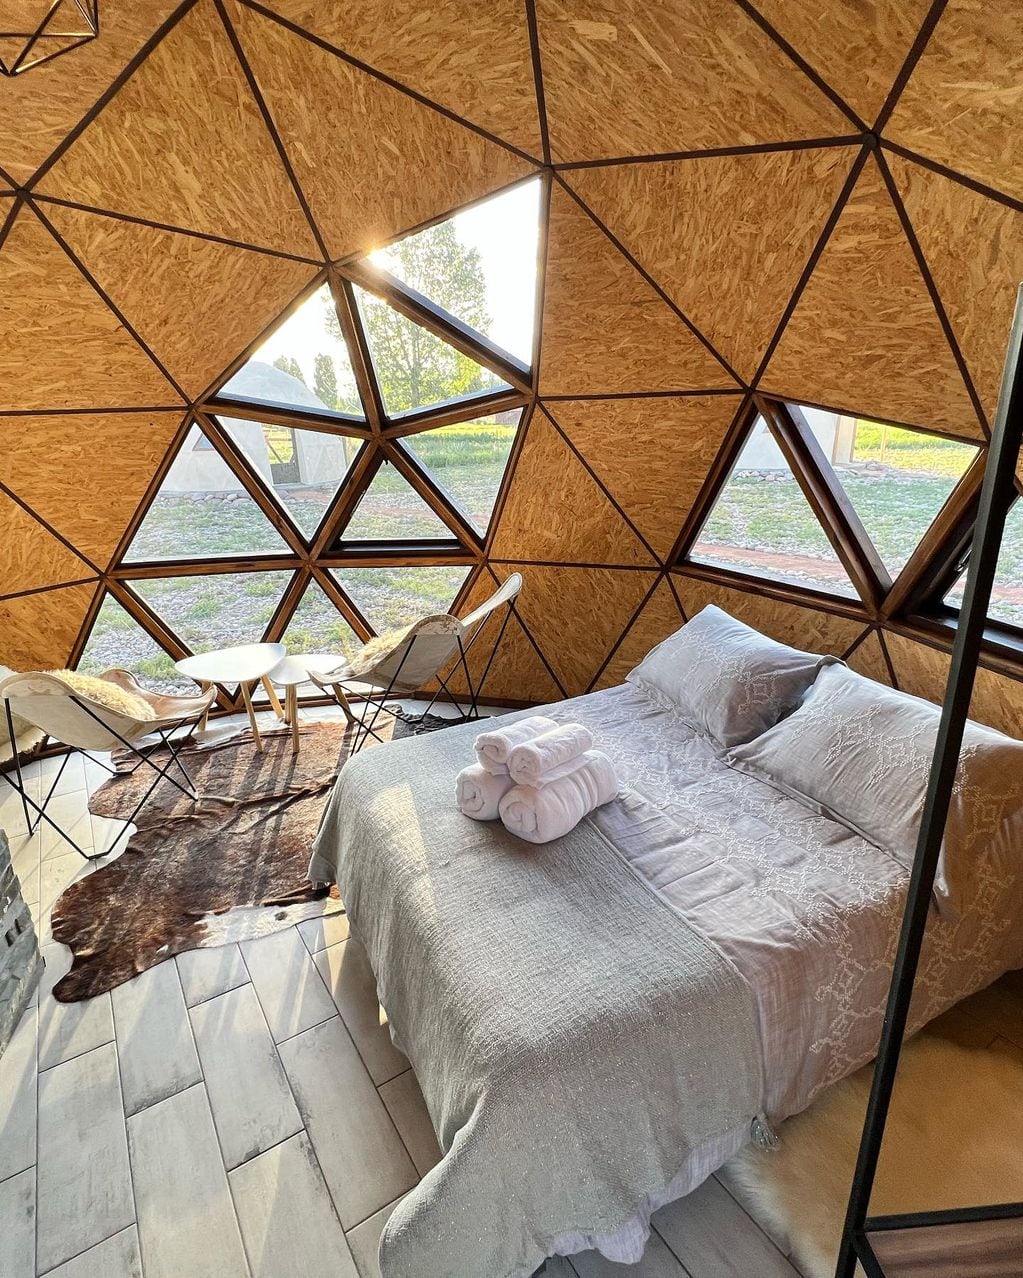 Cinco Cumbres Luxury Camp & Eco Lodge - Instagram.